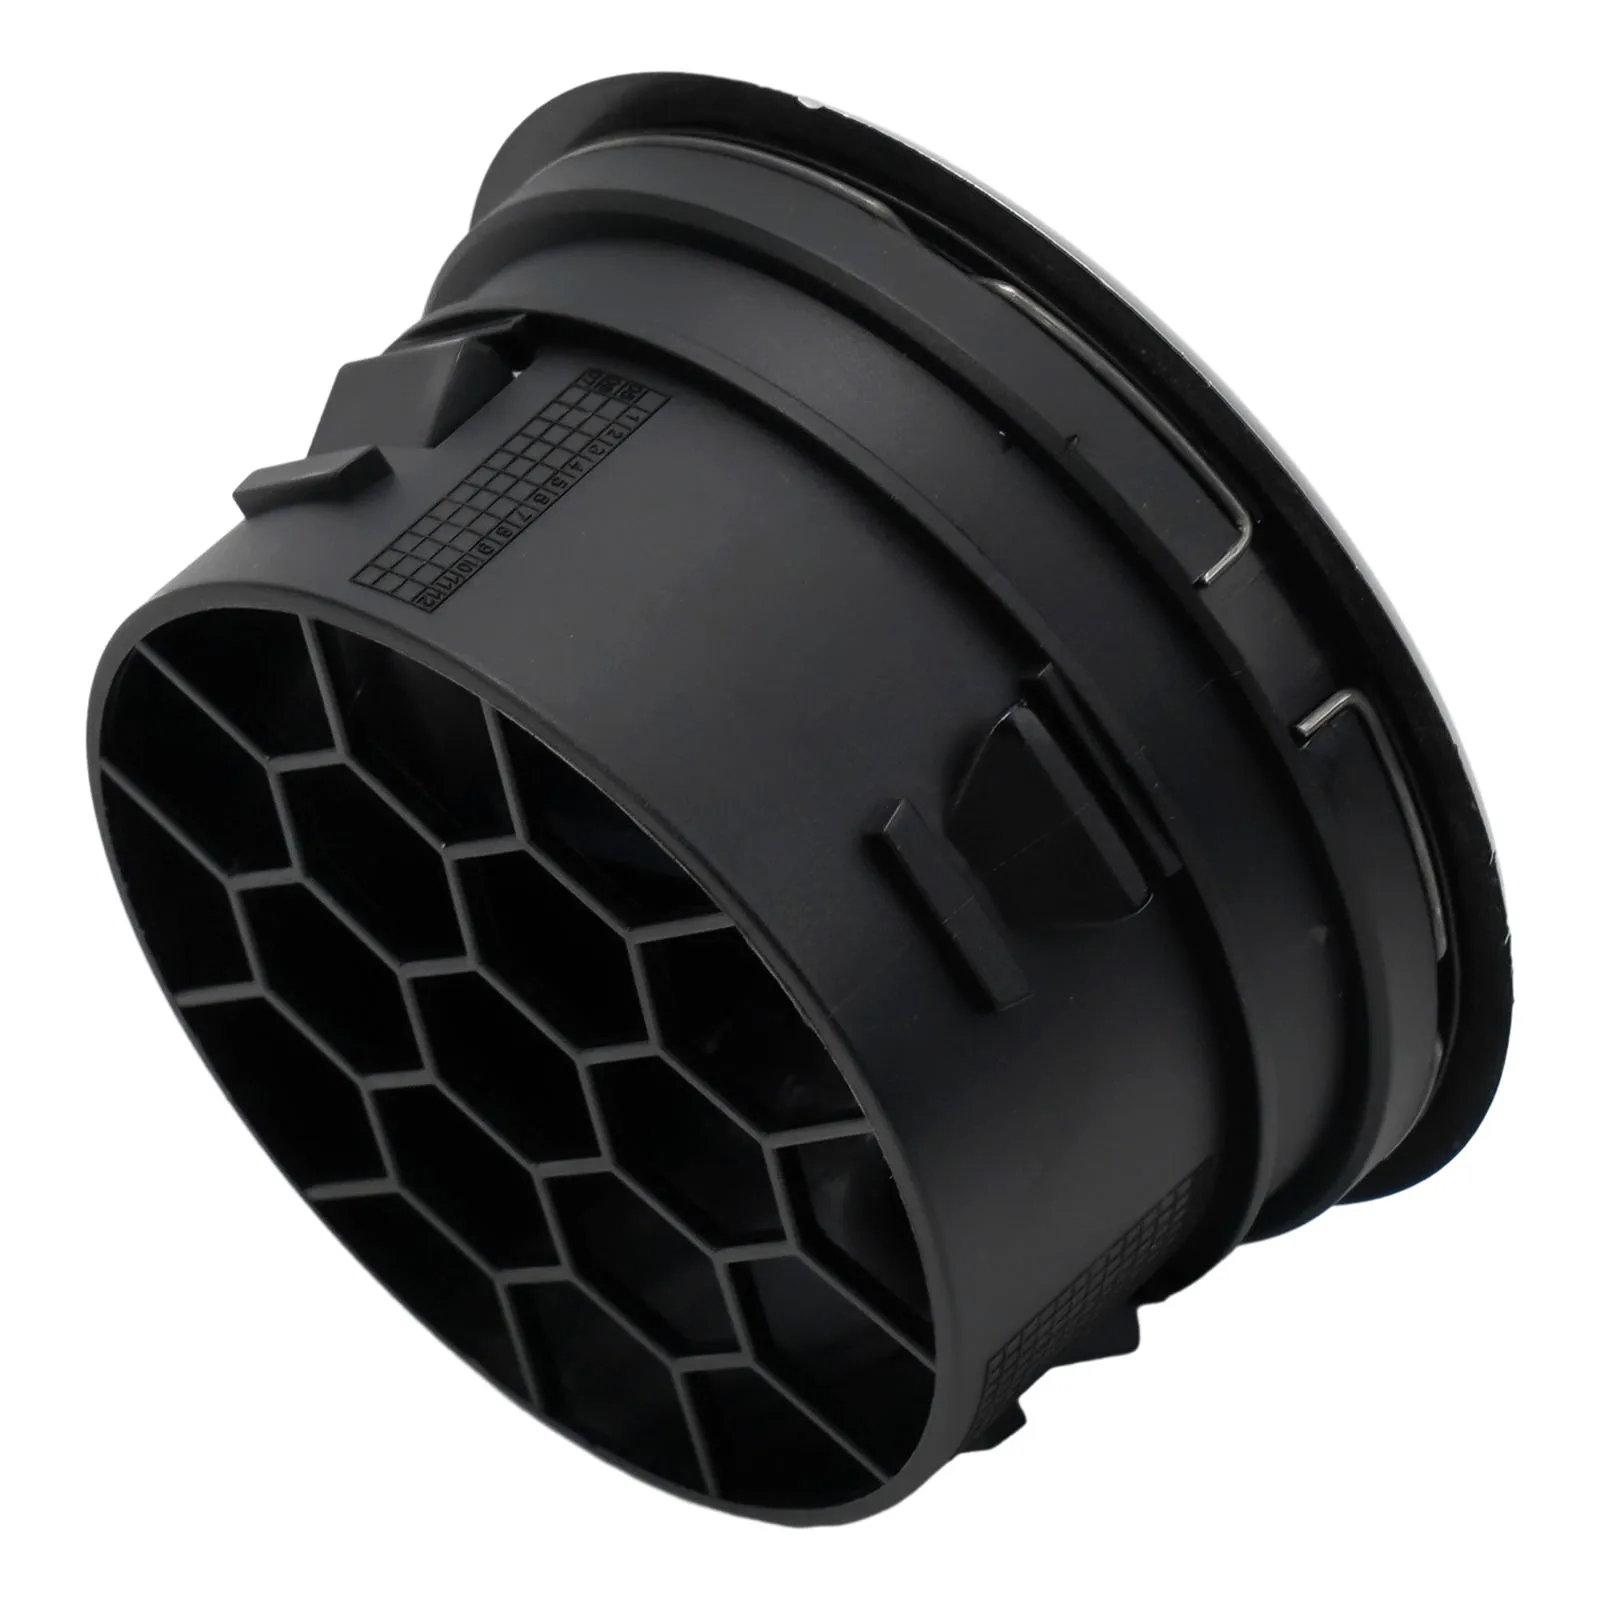 Autós légtelenítő légtelenítő autós kiegészítők Műszerfal légkondicionáló szellőzőnyílás Hármas légtelenítő lapát fekete kész készlet - 3